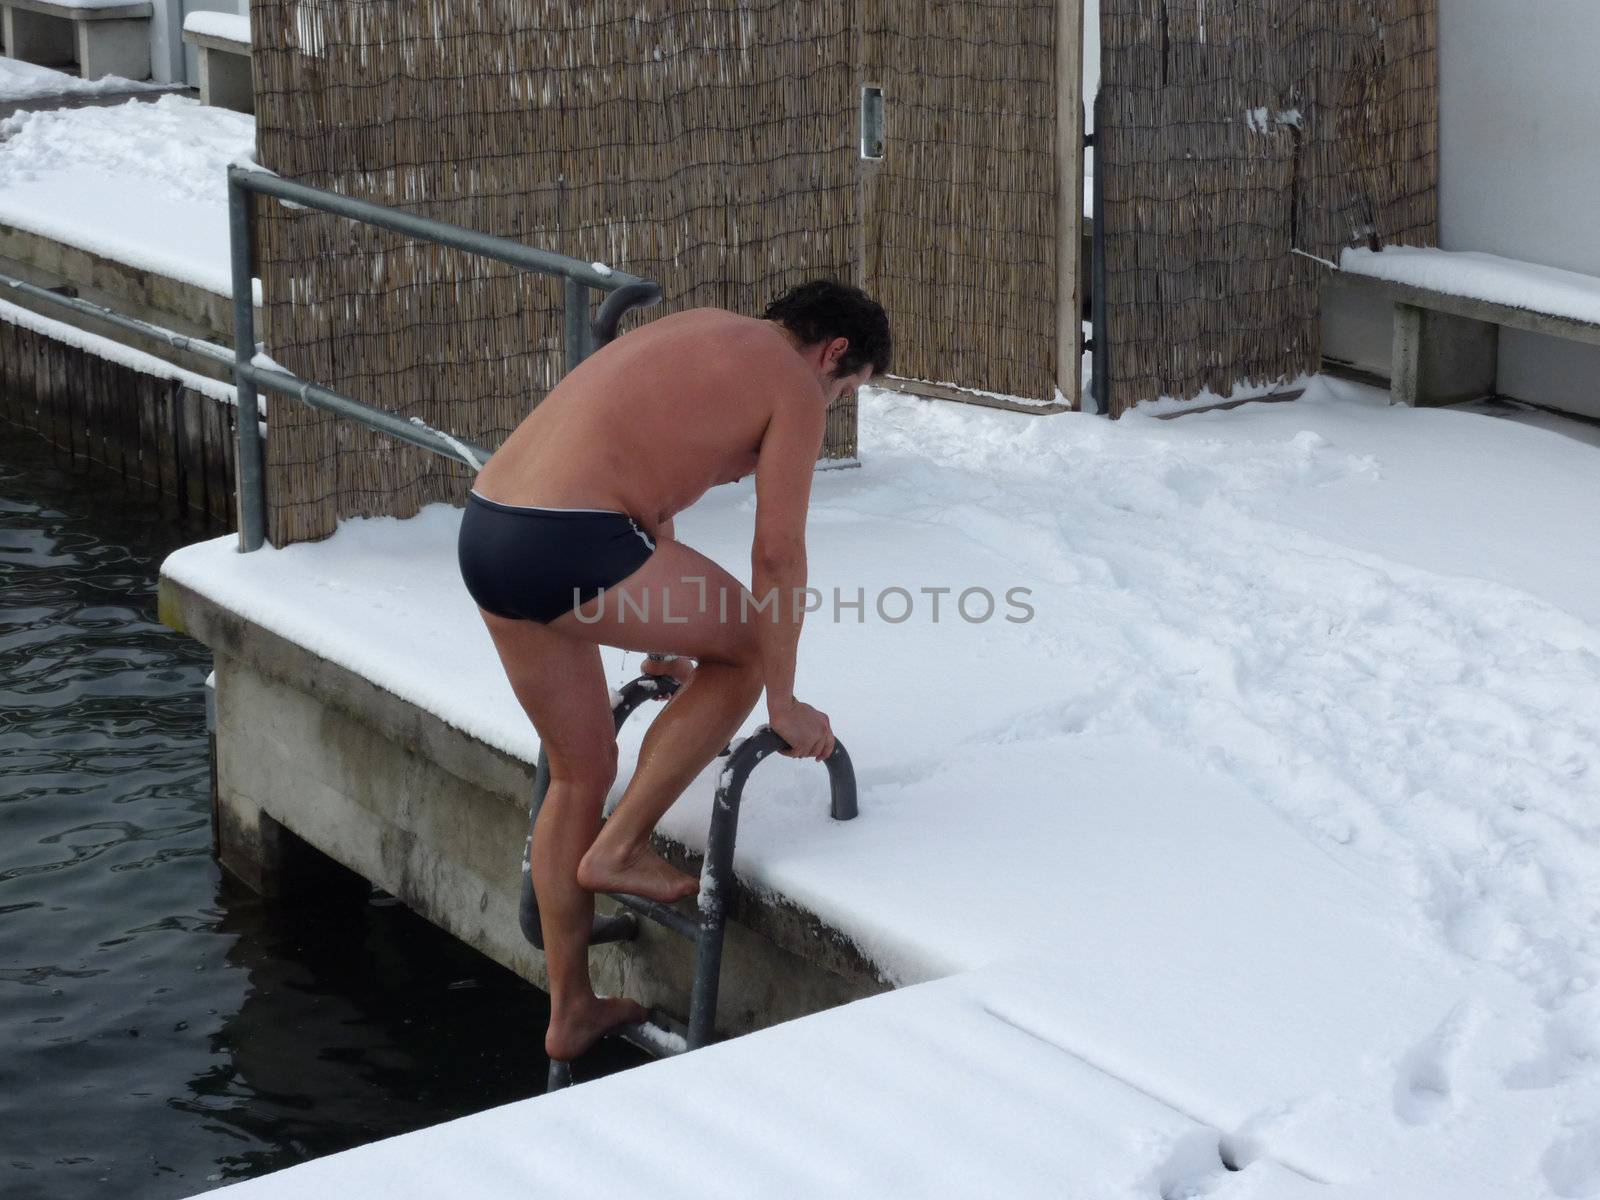 Swimmer in winter by Elenaphotos21